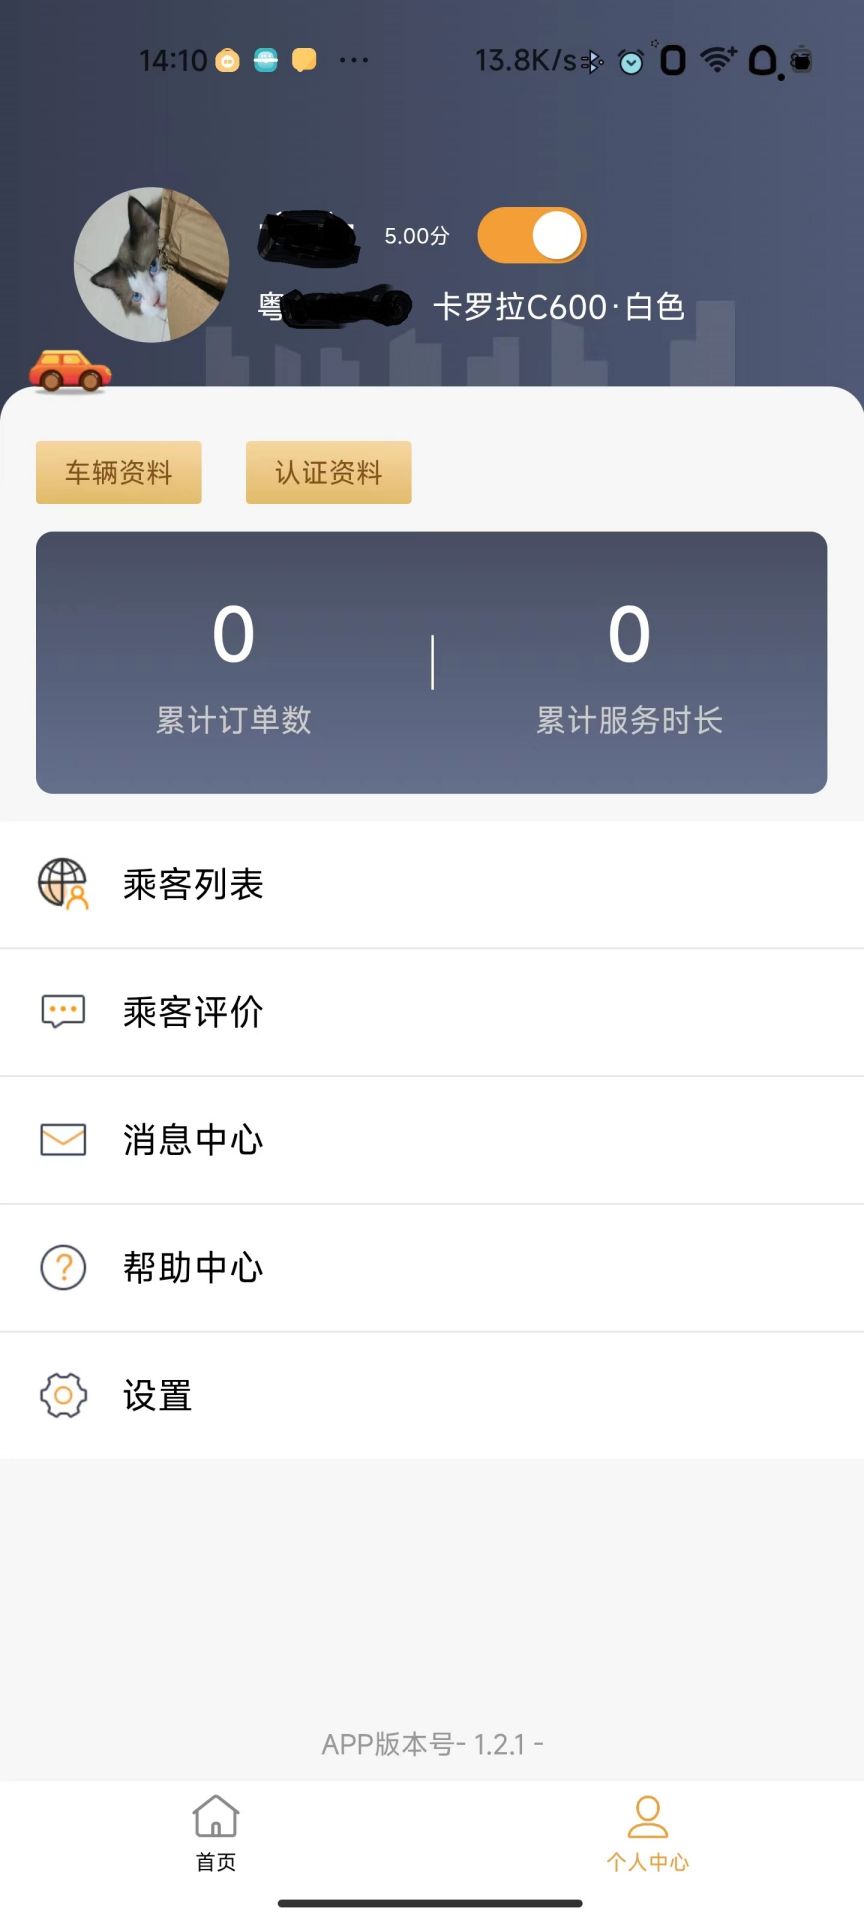 驿路相伴司机端app官方下载图1: